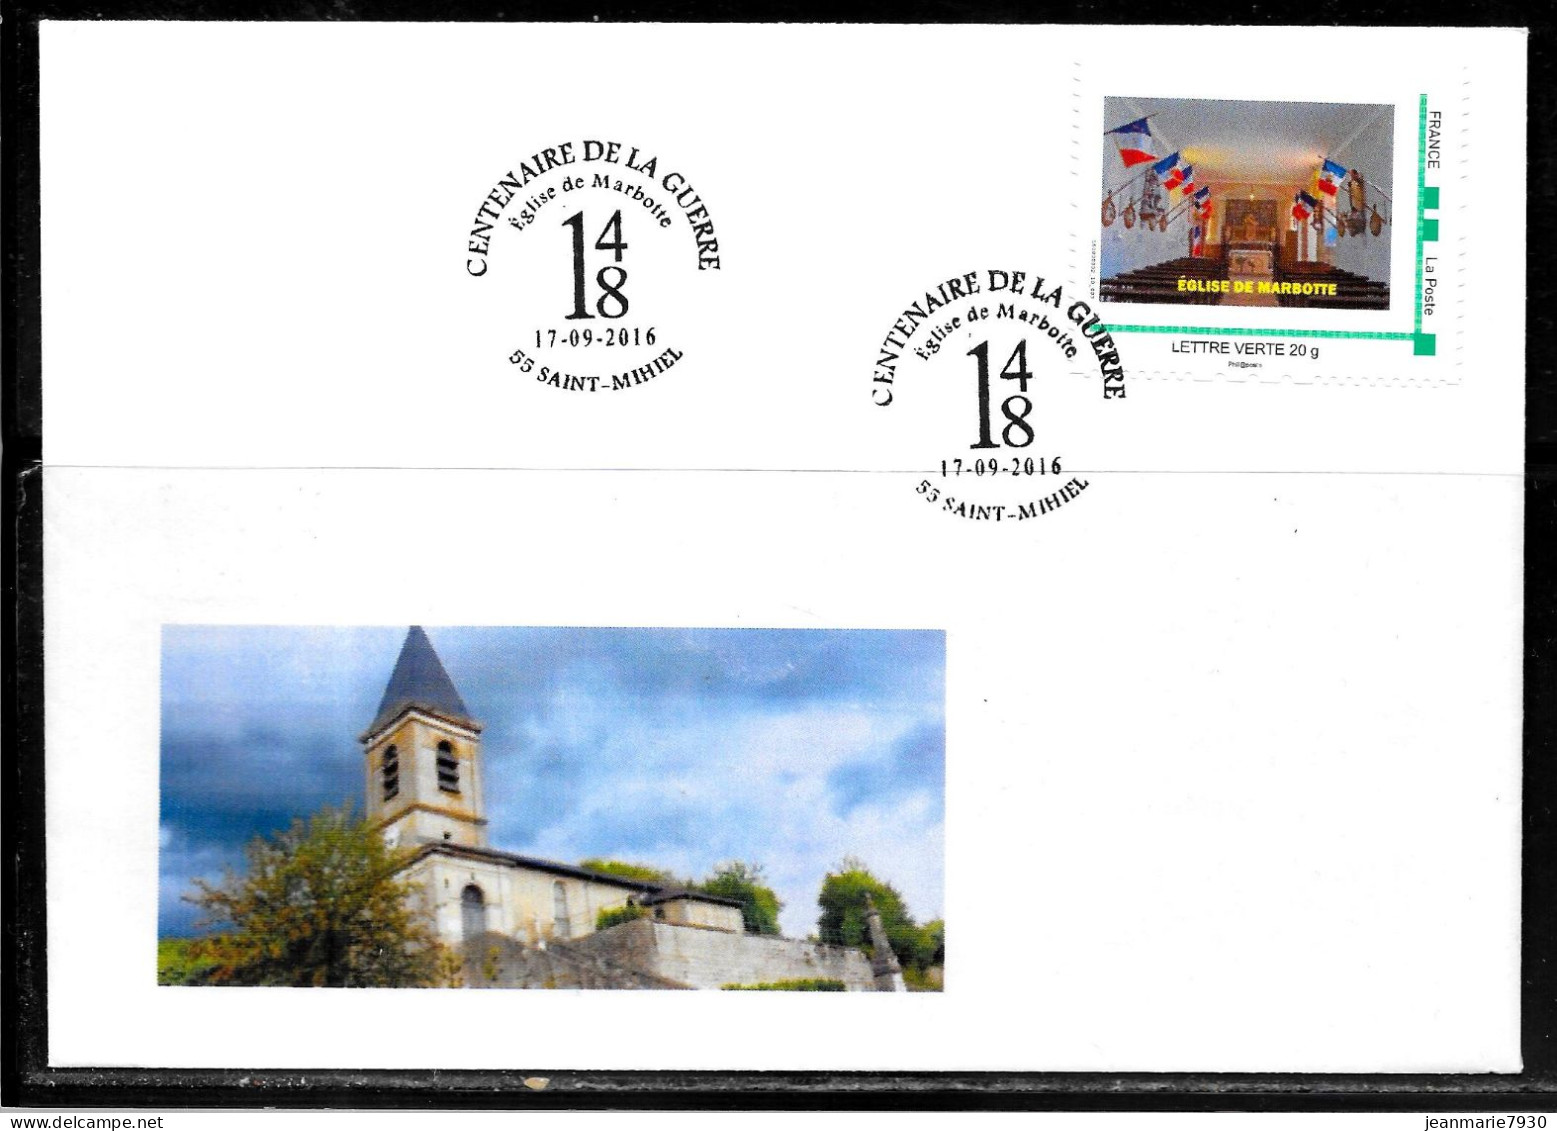 J29 - MONTIMBREAMOI - LETTRE DE SAINT MIHIEL DU 17/09/16 - EGLISE DE MARBOTTE - Covers & Documents